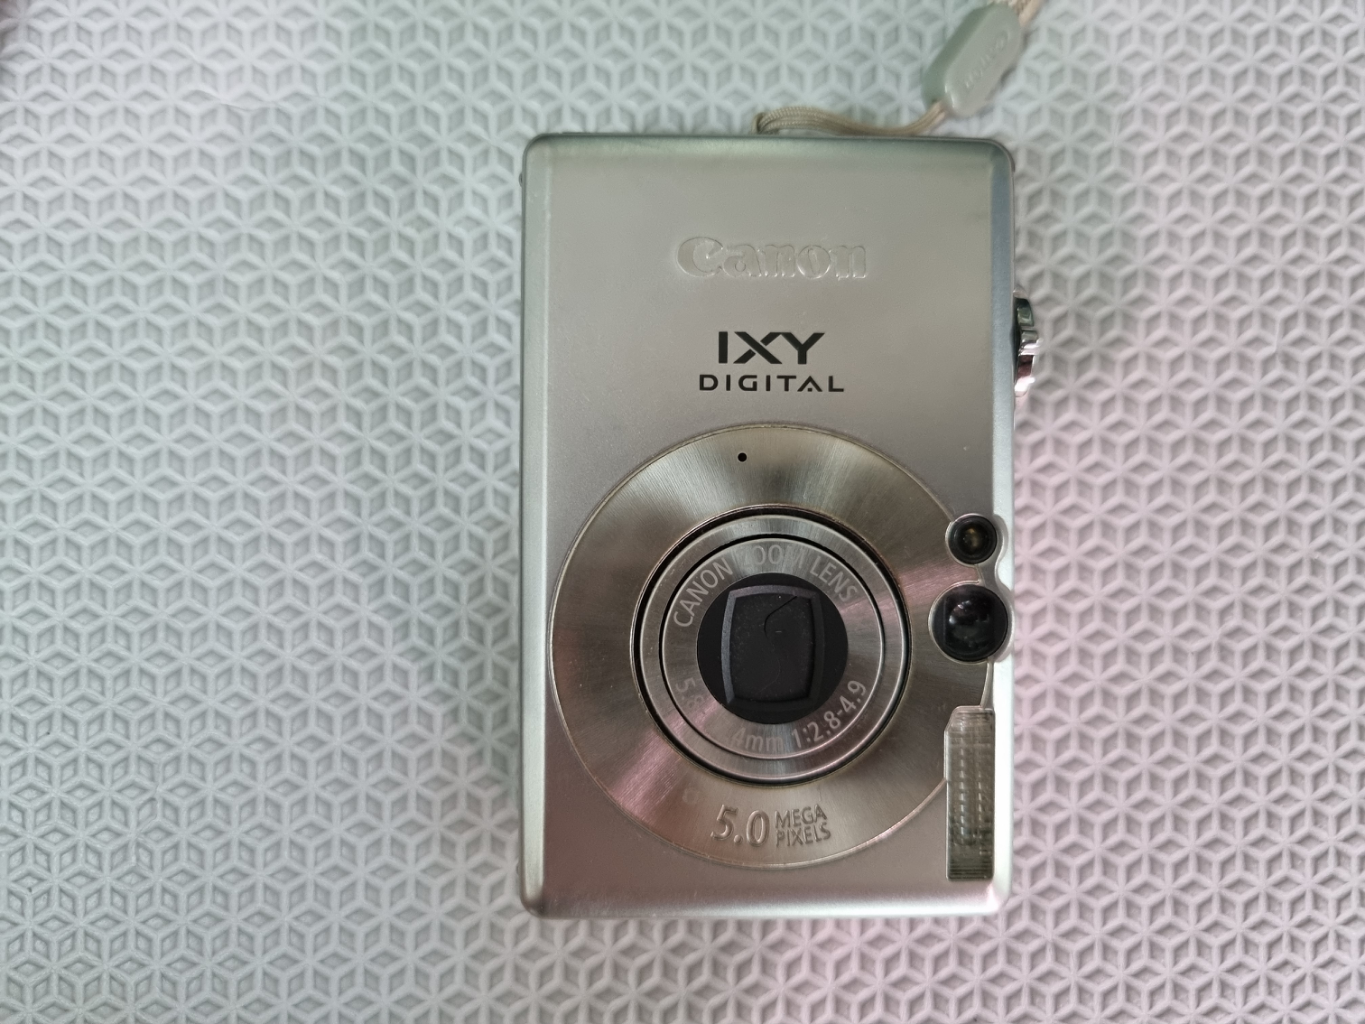 캐논 Ixy60 디지털카메라